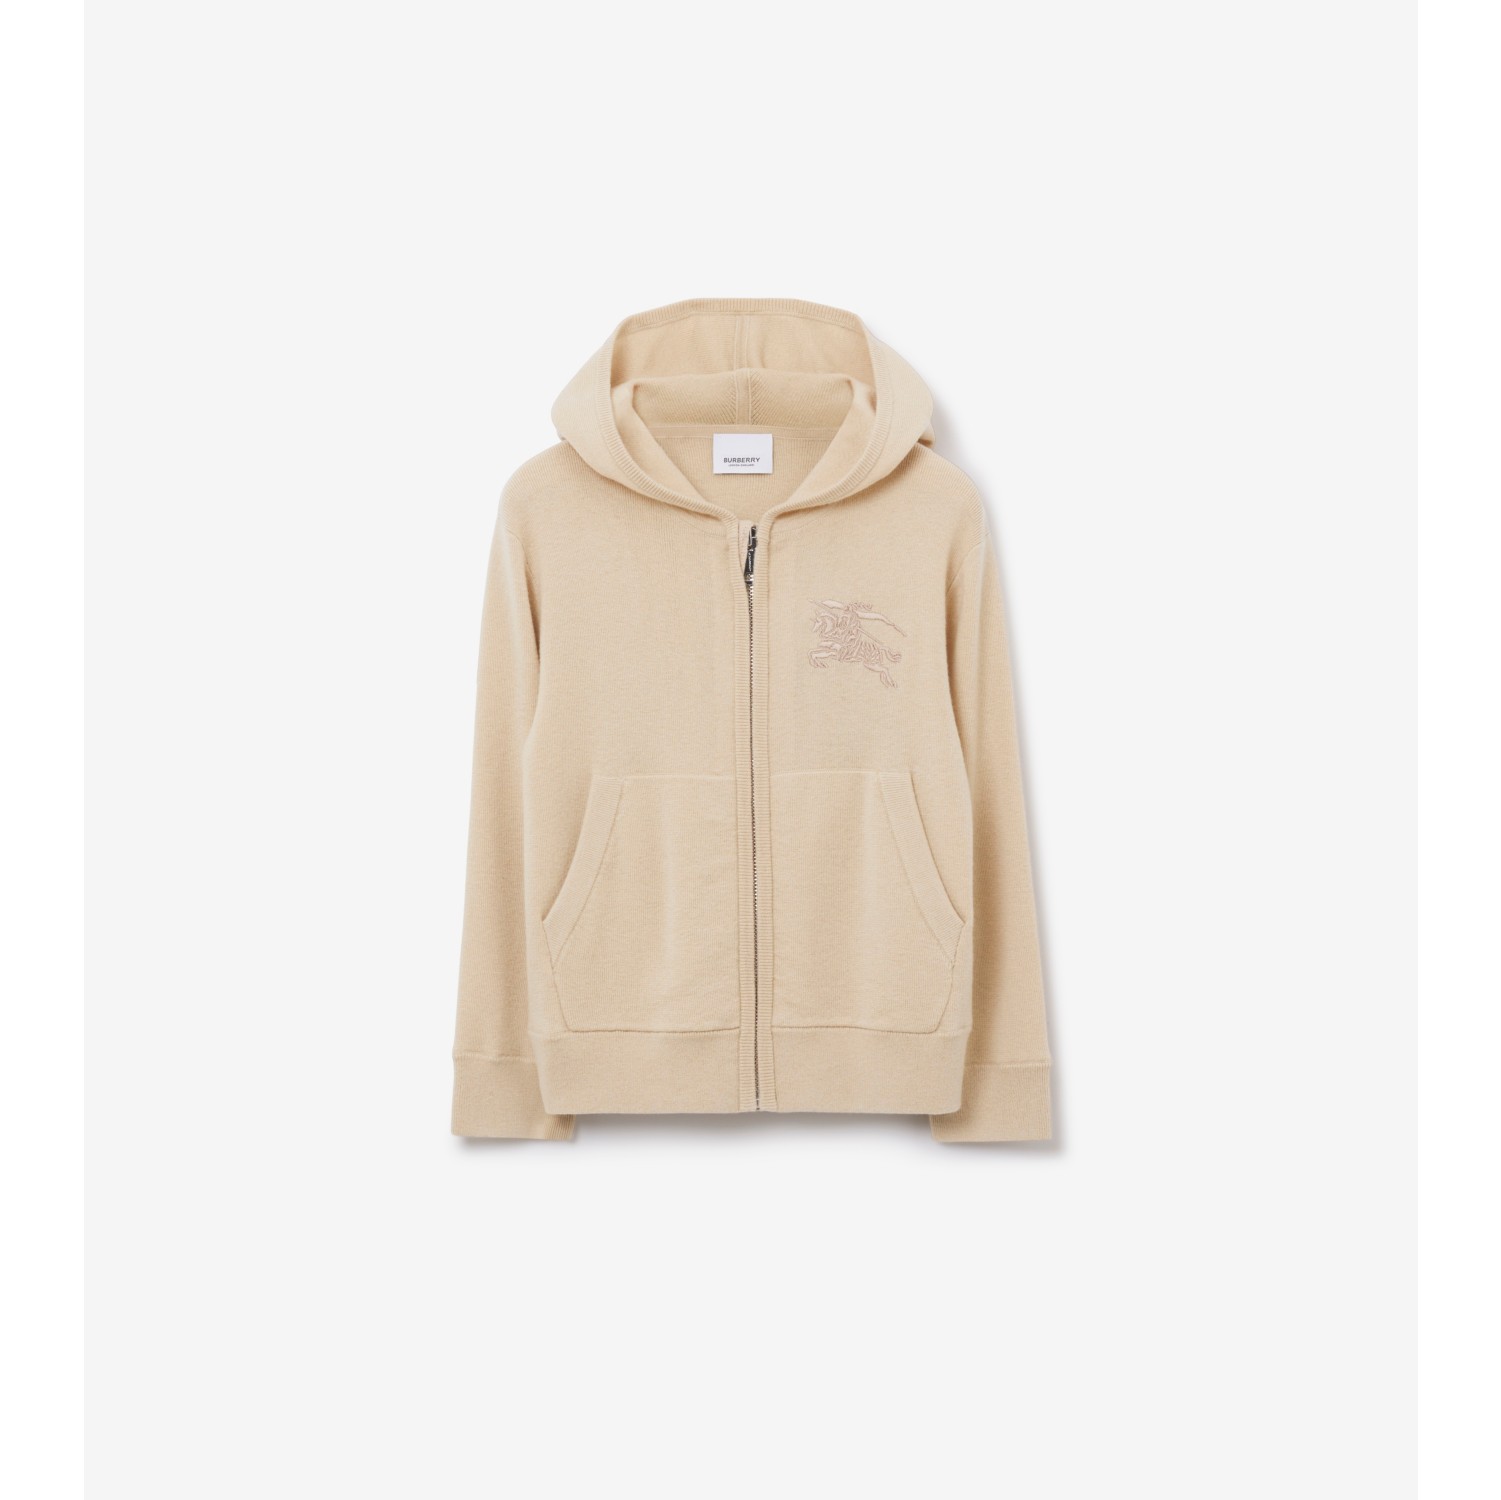 zip hoodie price